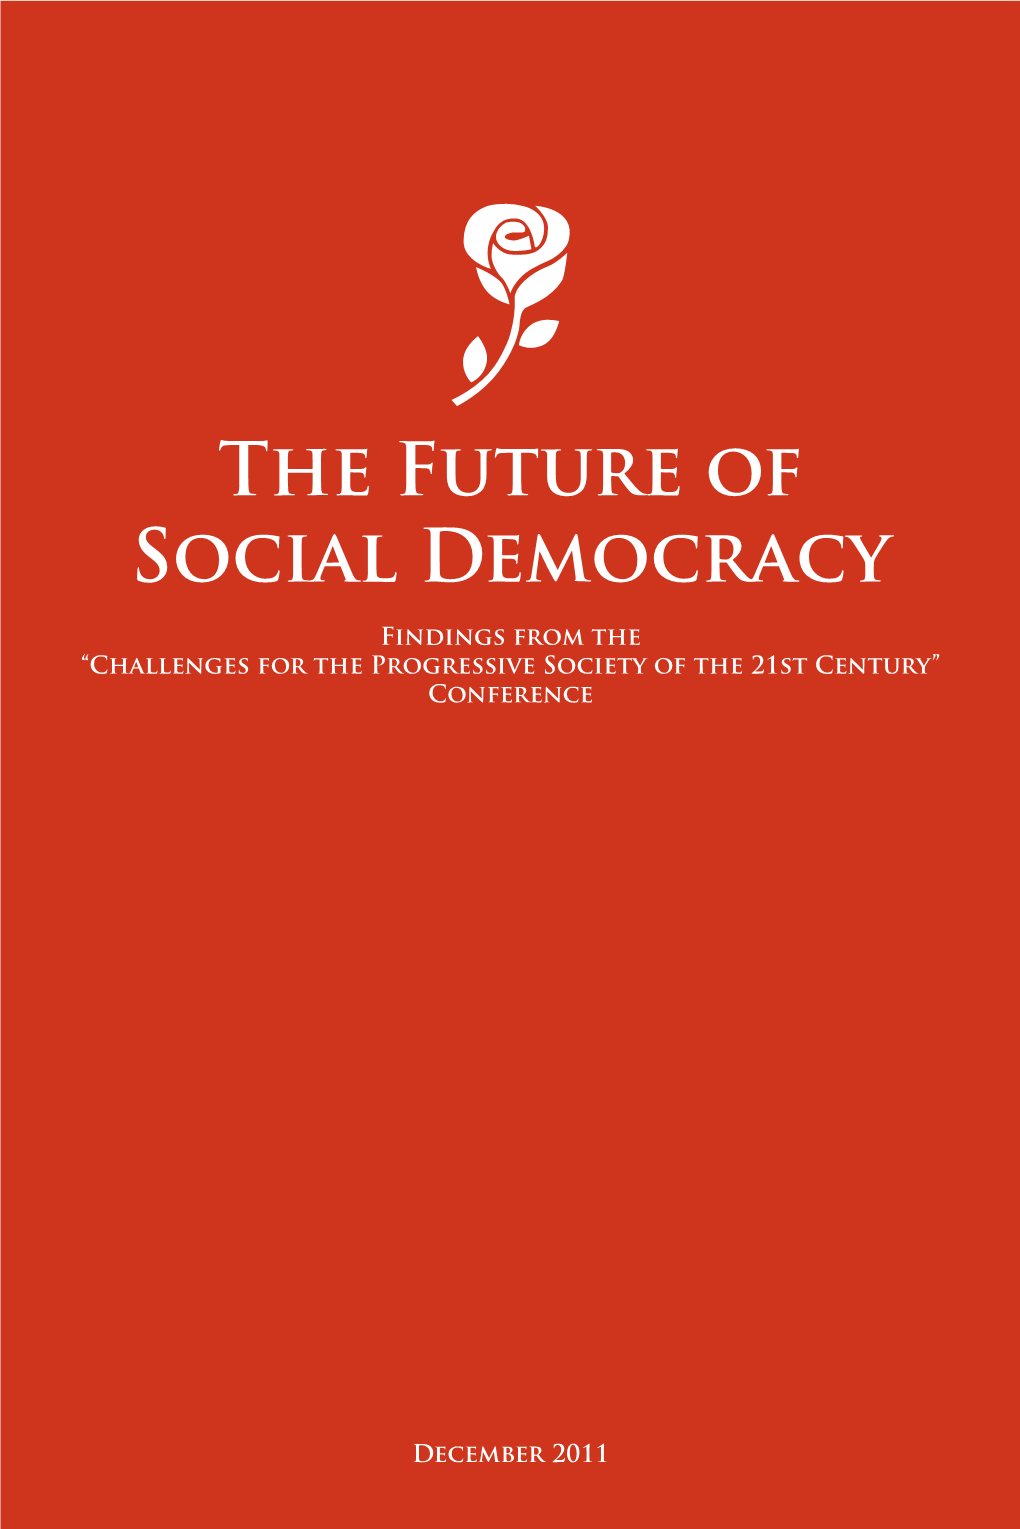 The Future of Social Democracy the Futu Re O F Social D Em Ocrac Y